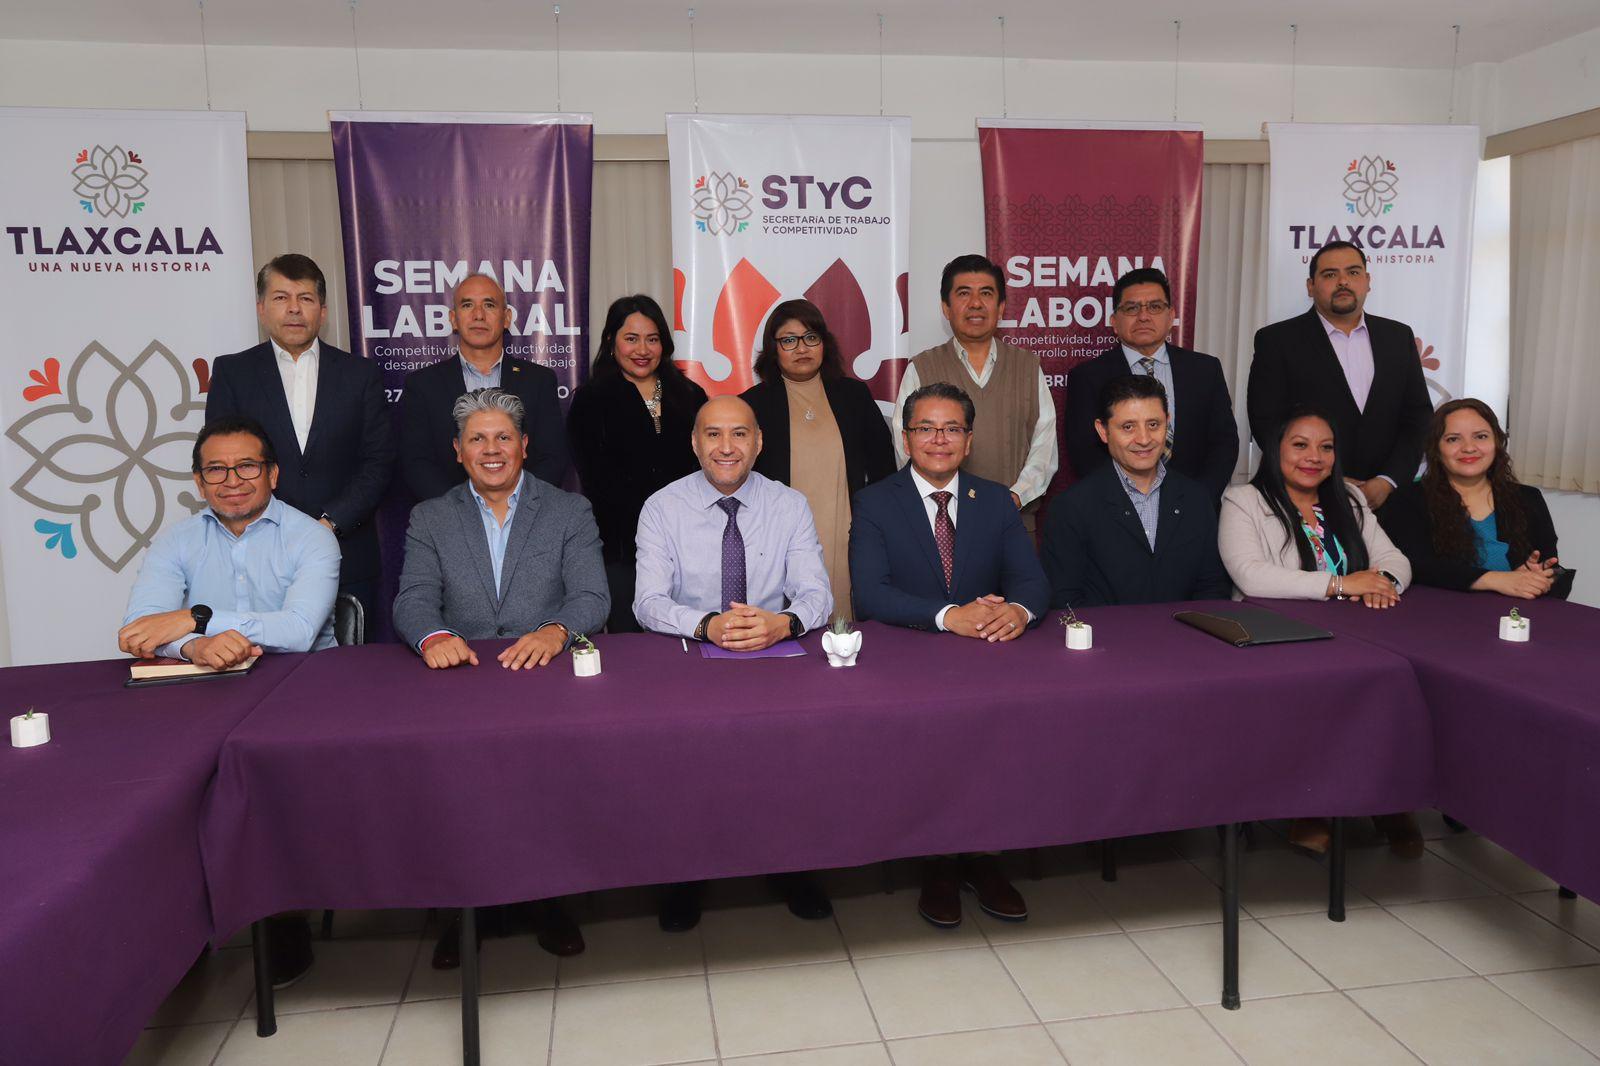 Presenta STYC semana laboral con 39 actividades dirigidas a empleadores y buscadores de empleo